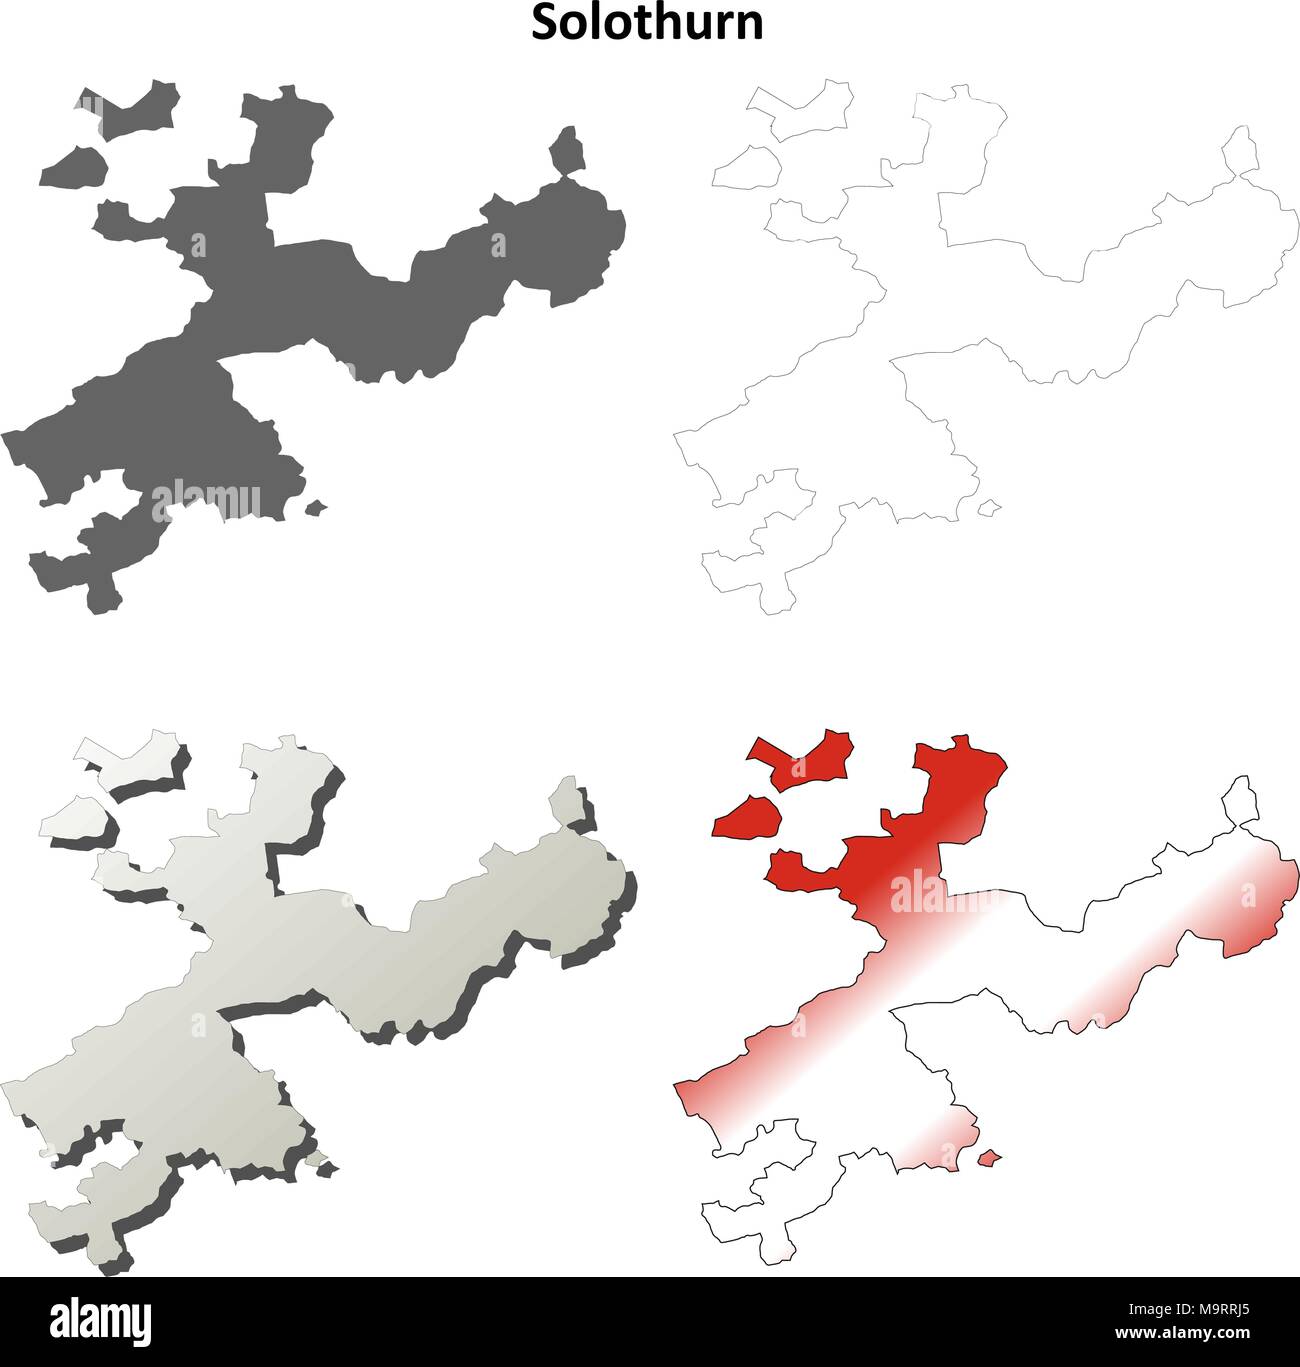 Solothurn blank dettagliata mappa di contorno impostato Illustrazione Vettoriale